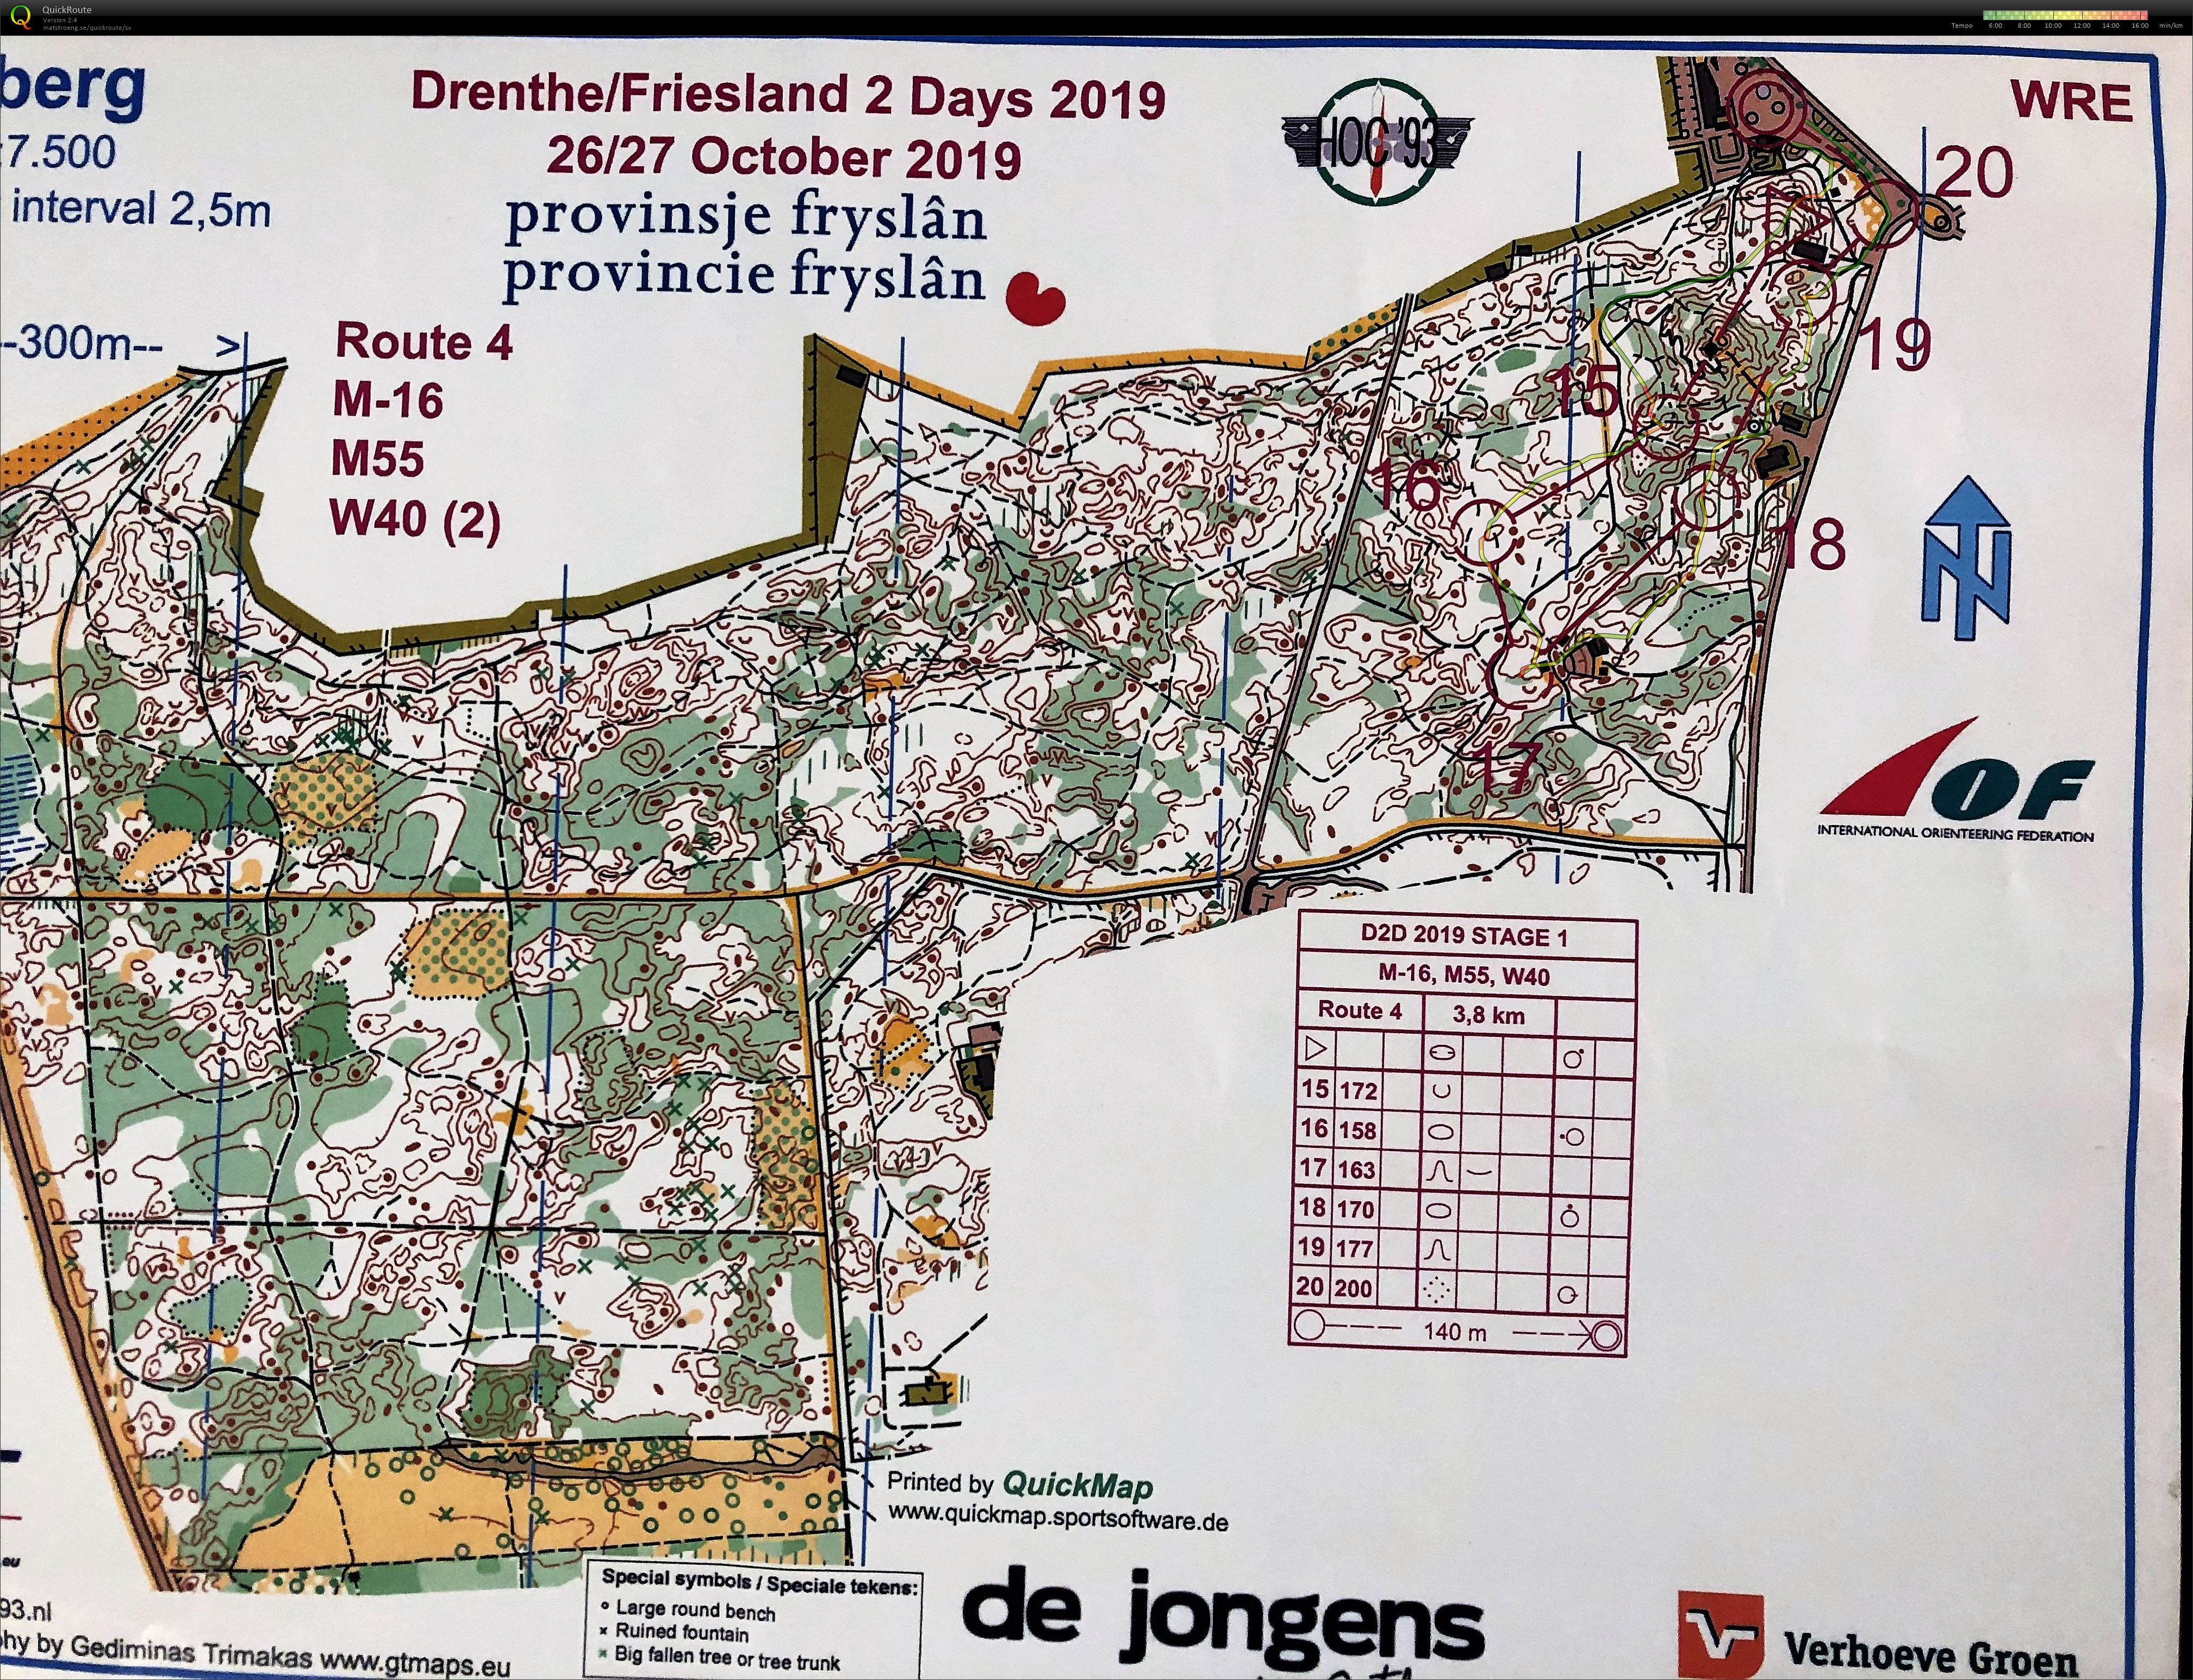 Drenthe 2days Medel del2 (26-10-2019)